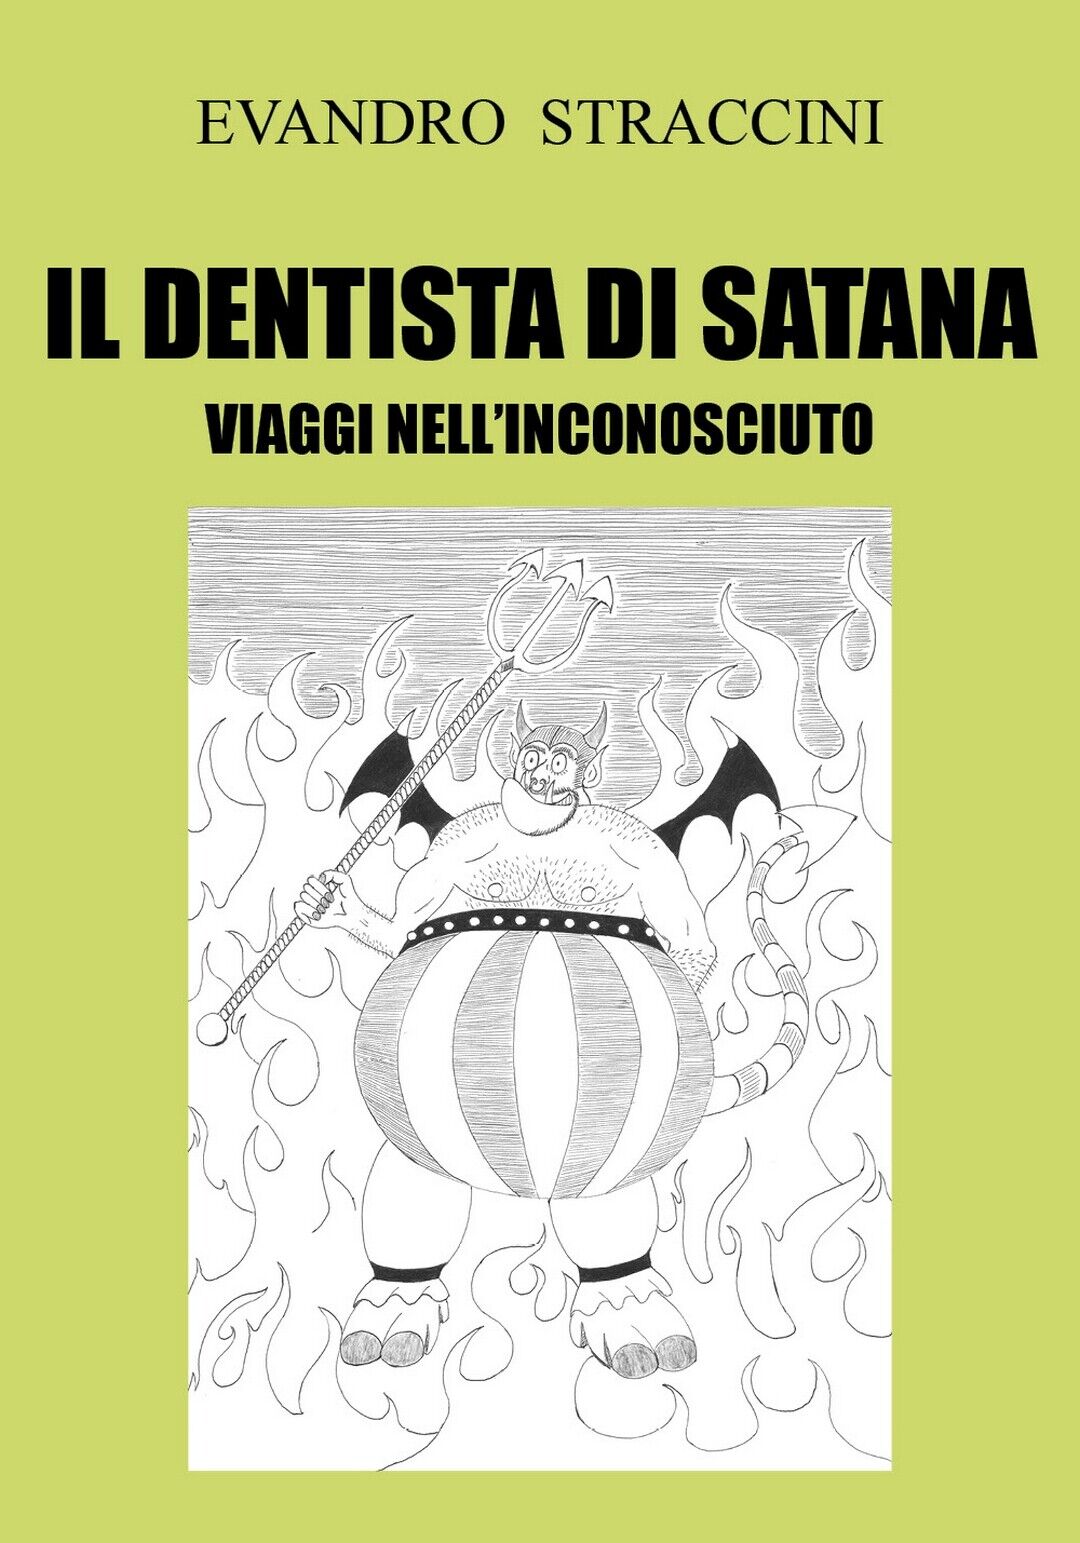 Il Dentista di Satana - Viaggi nelL'Inconosciuto  di Evandro Straccini,  2018 libro usato